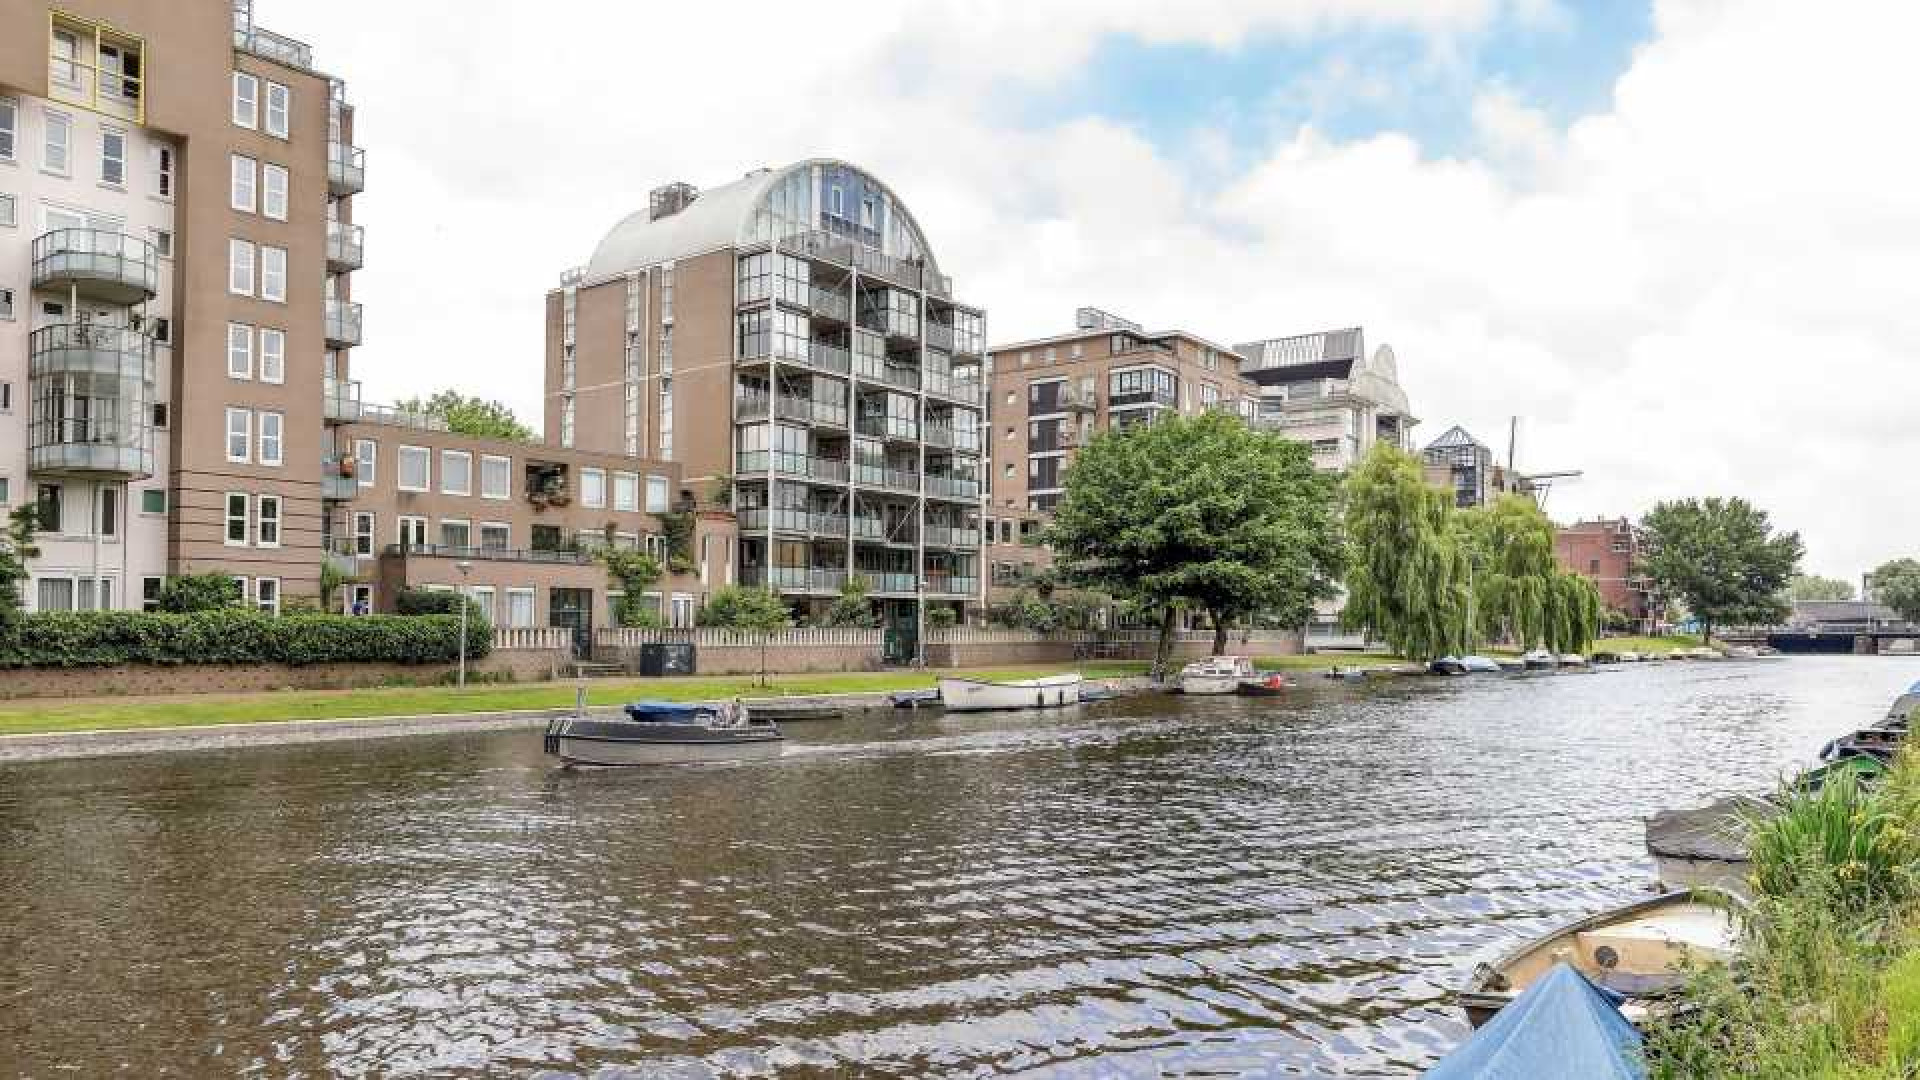 Alberto Stegeman verkoopt zijn Amsterdamse appartement met vette winst. Zie foto's 1